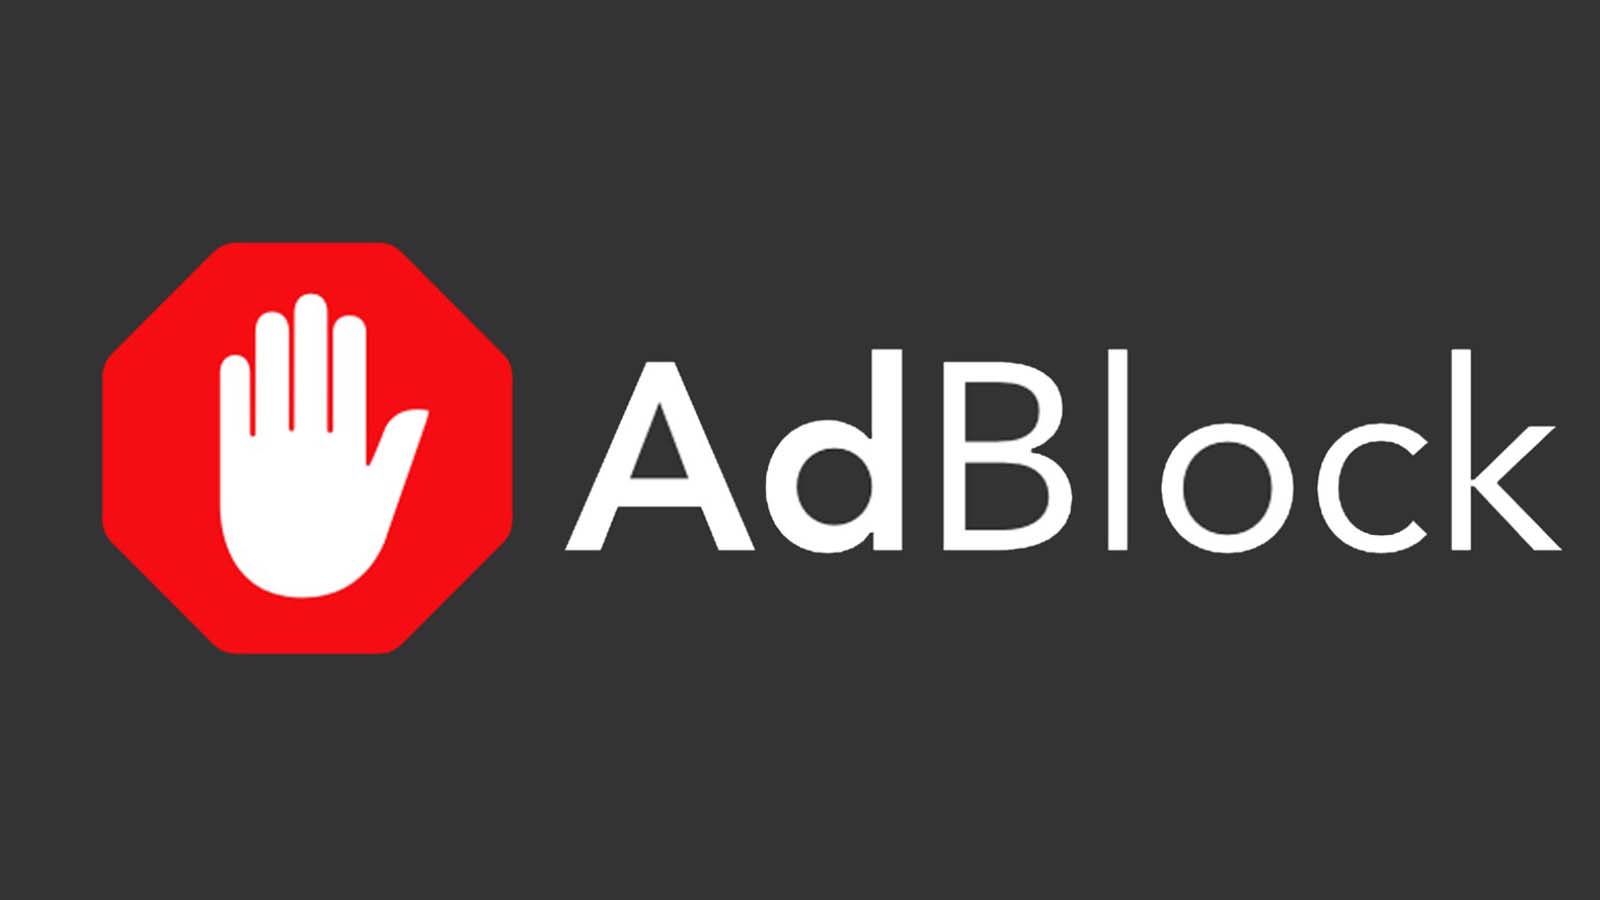 Le tattiche utilizzate da YouTube per scoraggiare gli utenti Adblock e proteggere i suoi ricavi pubblicitari